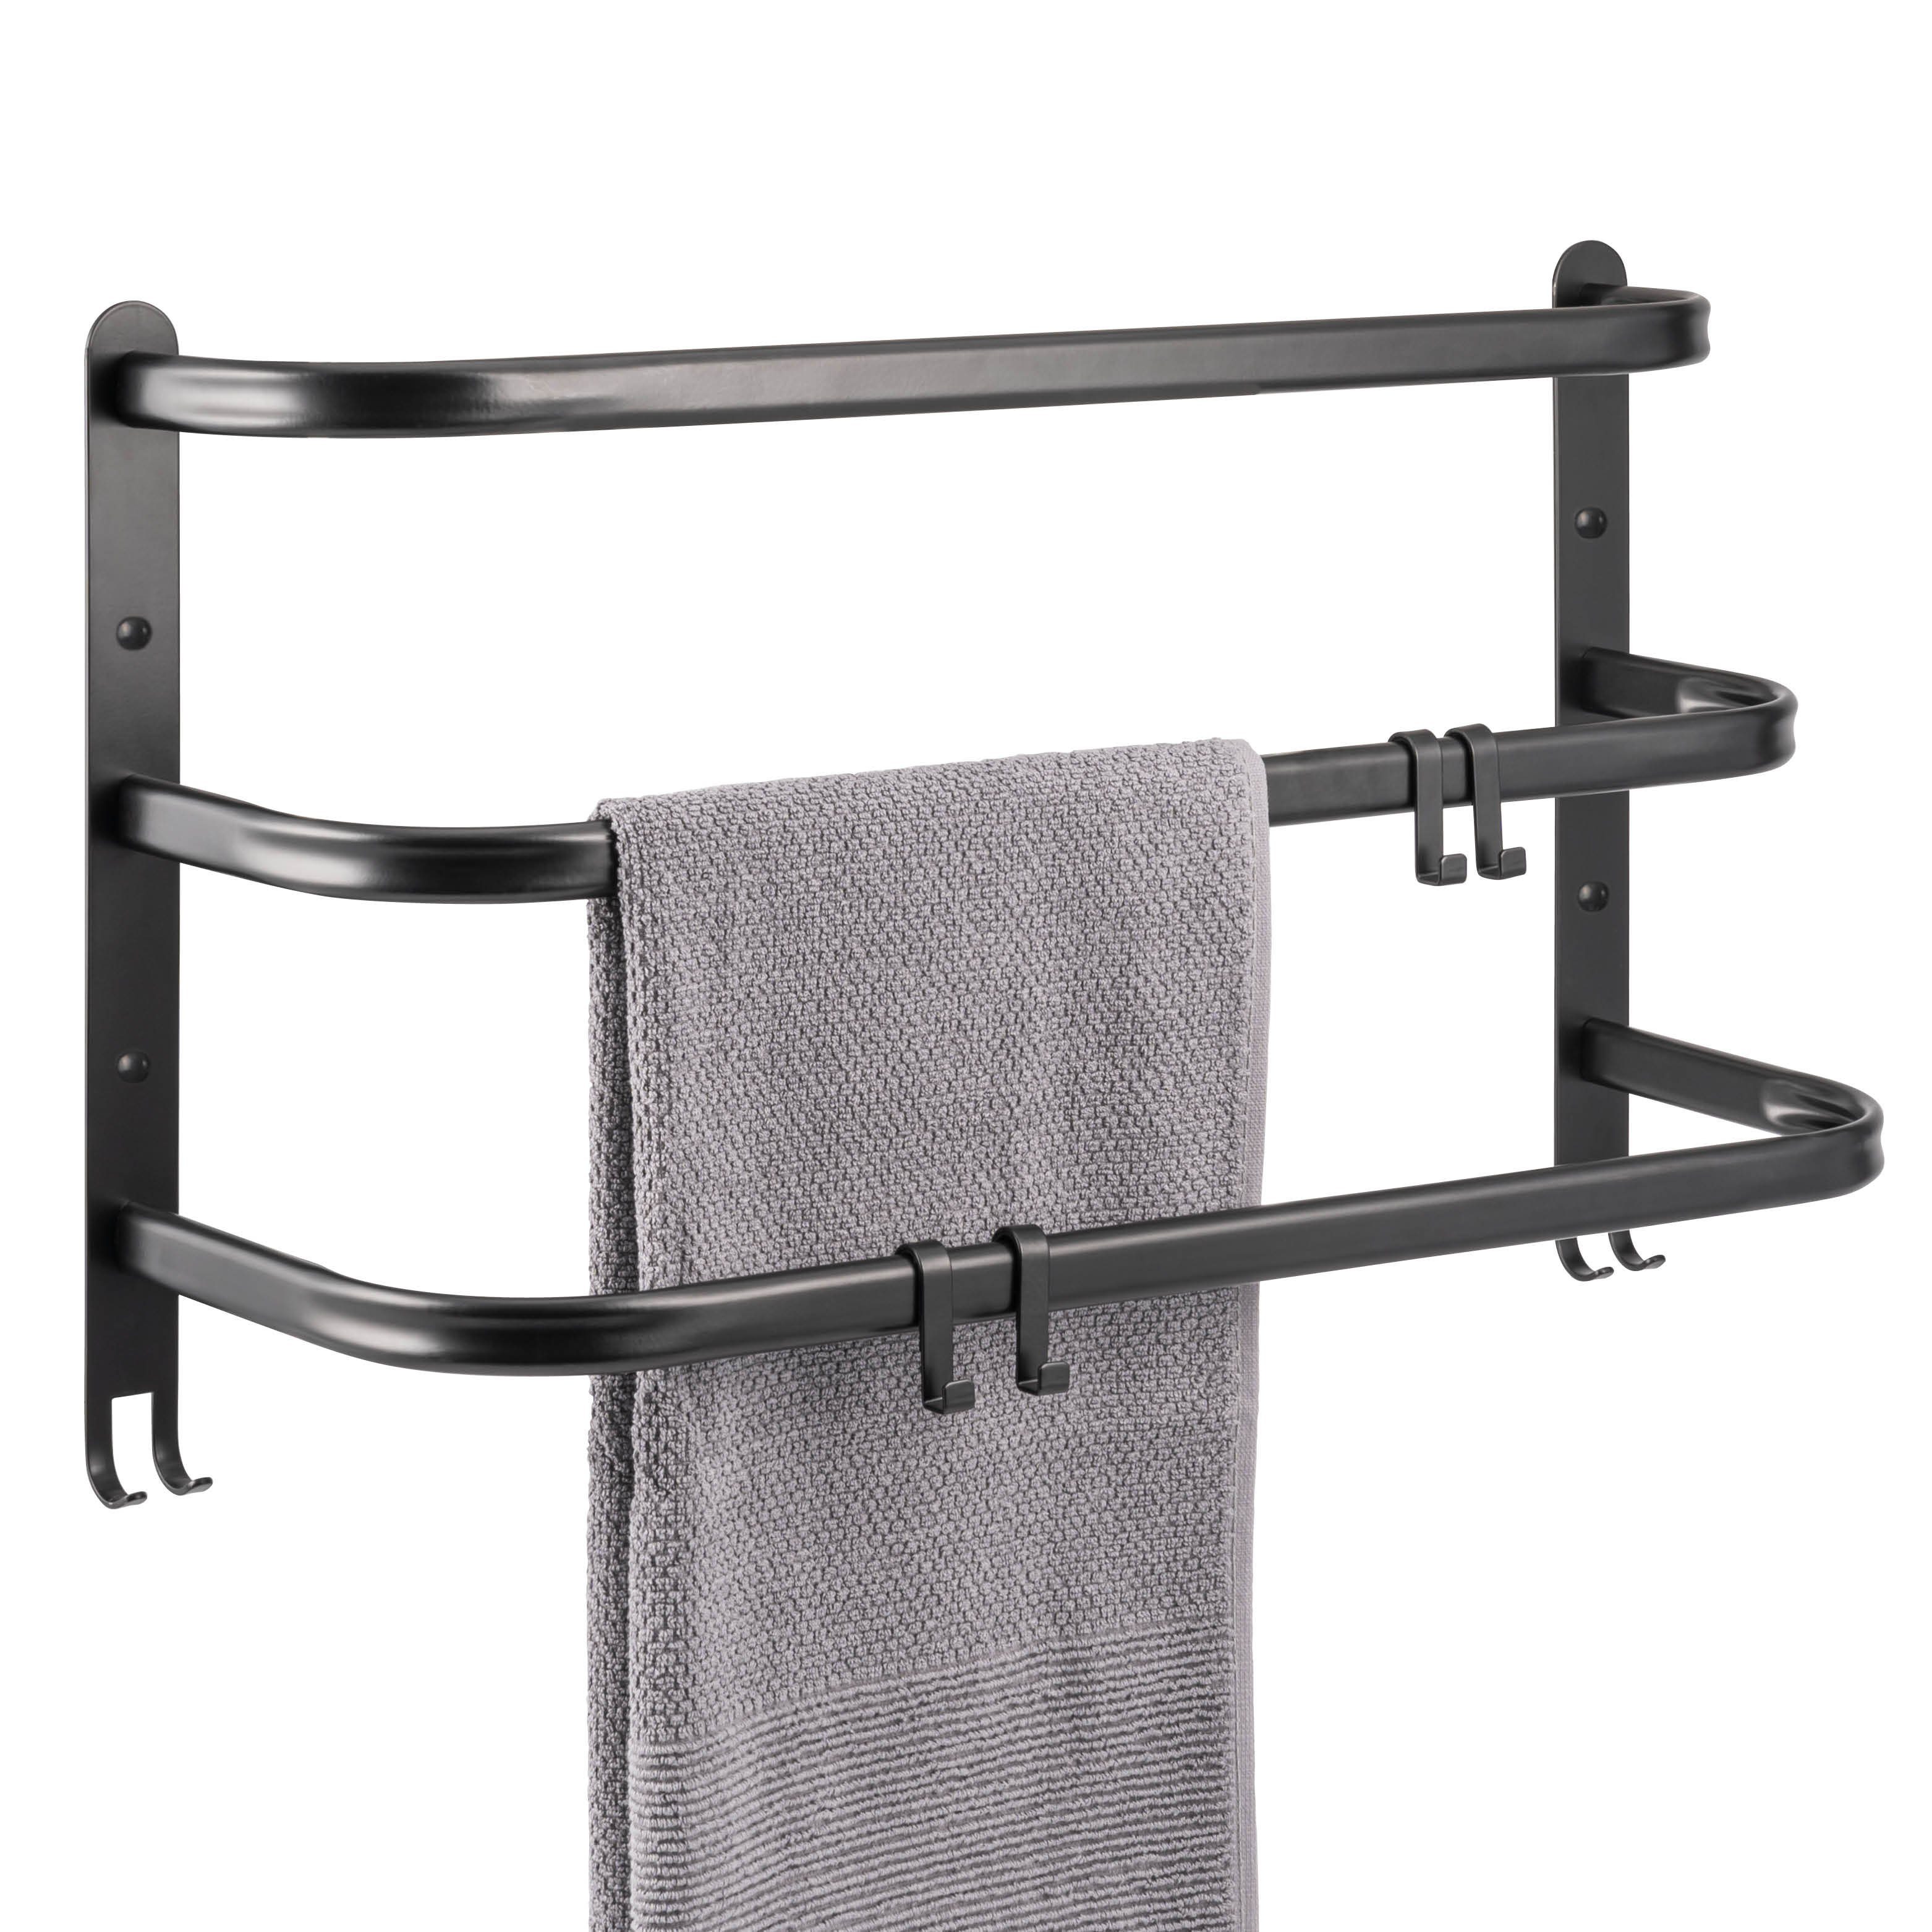 bremermann Handtuchhalter Wand-Handtuchhalter, 3 gestufte Ablagen, Handtuchstange, schwarz